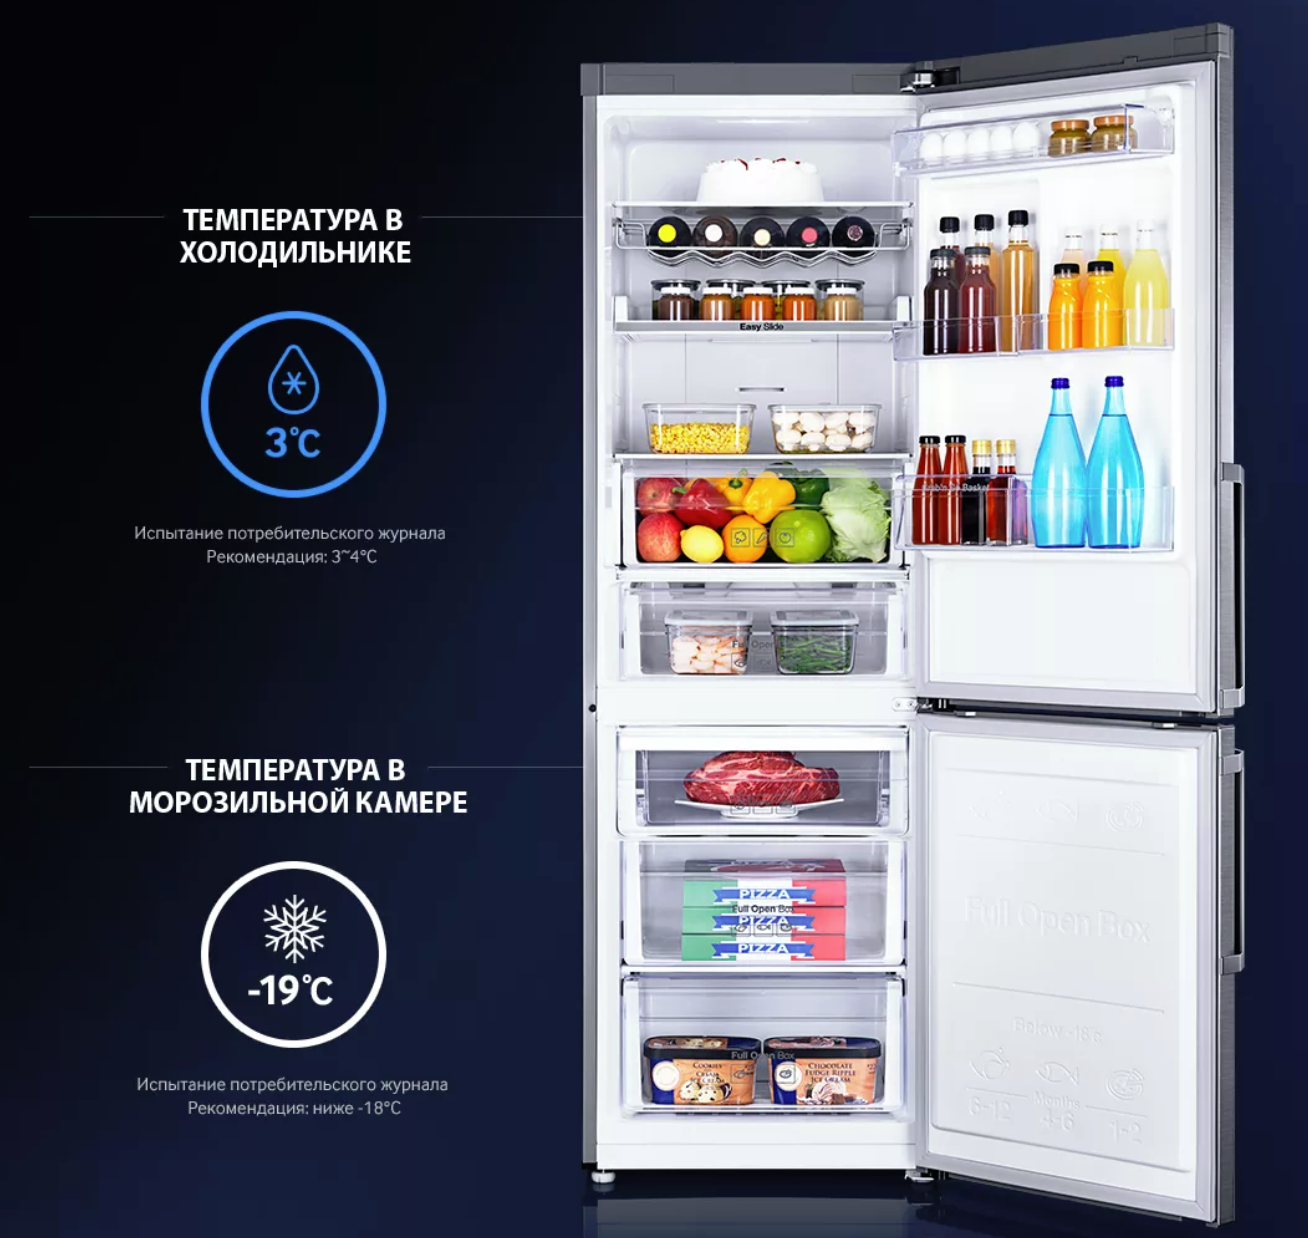 На сколько ставить холодильник. Холодильник самсунг двухкамерный градусы. Оптимальная температура в холодильнике самсунг. Температура в холодоль. Ьемпертврца в холодильнике.